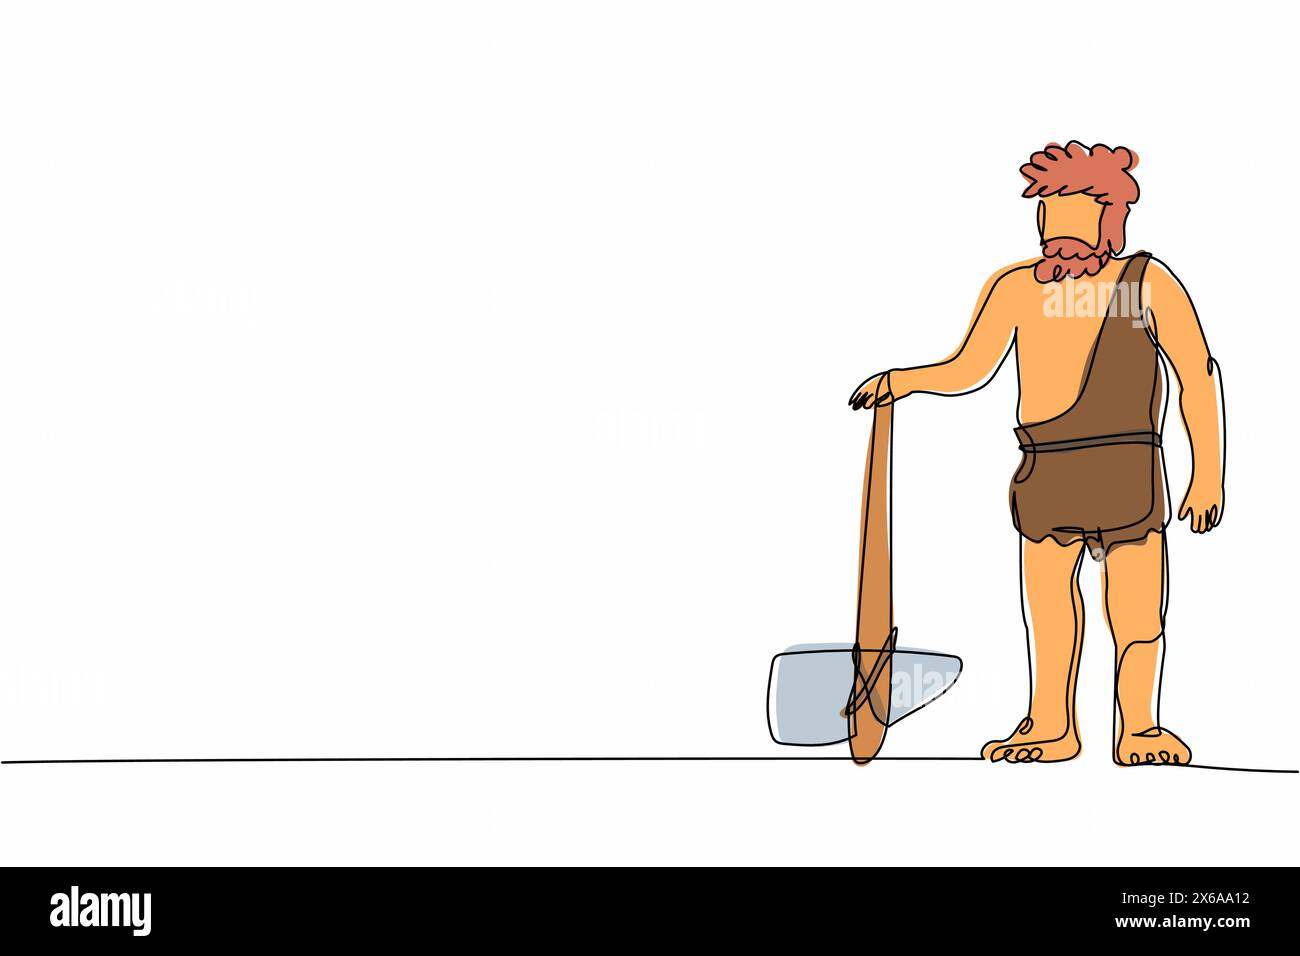 Simple une ligne dessinant homme des cavernes debout et tenant la hache de pierre. Homme barbu préhistorique vêtu de peaux animales. Chasseur néandertalien. Humain ancien. CON Illustration de Vecteur